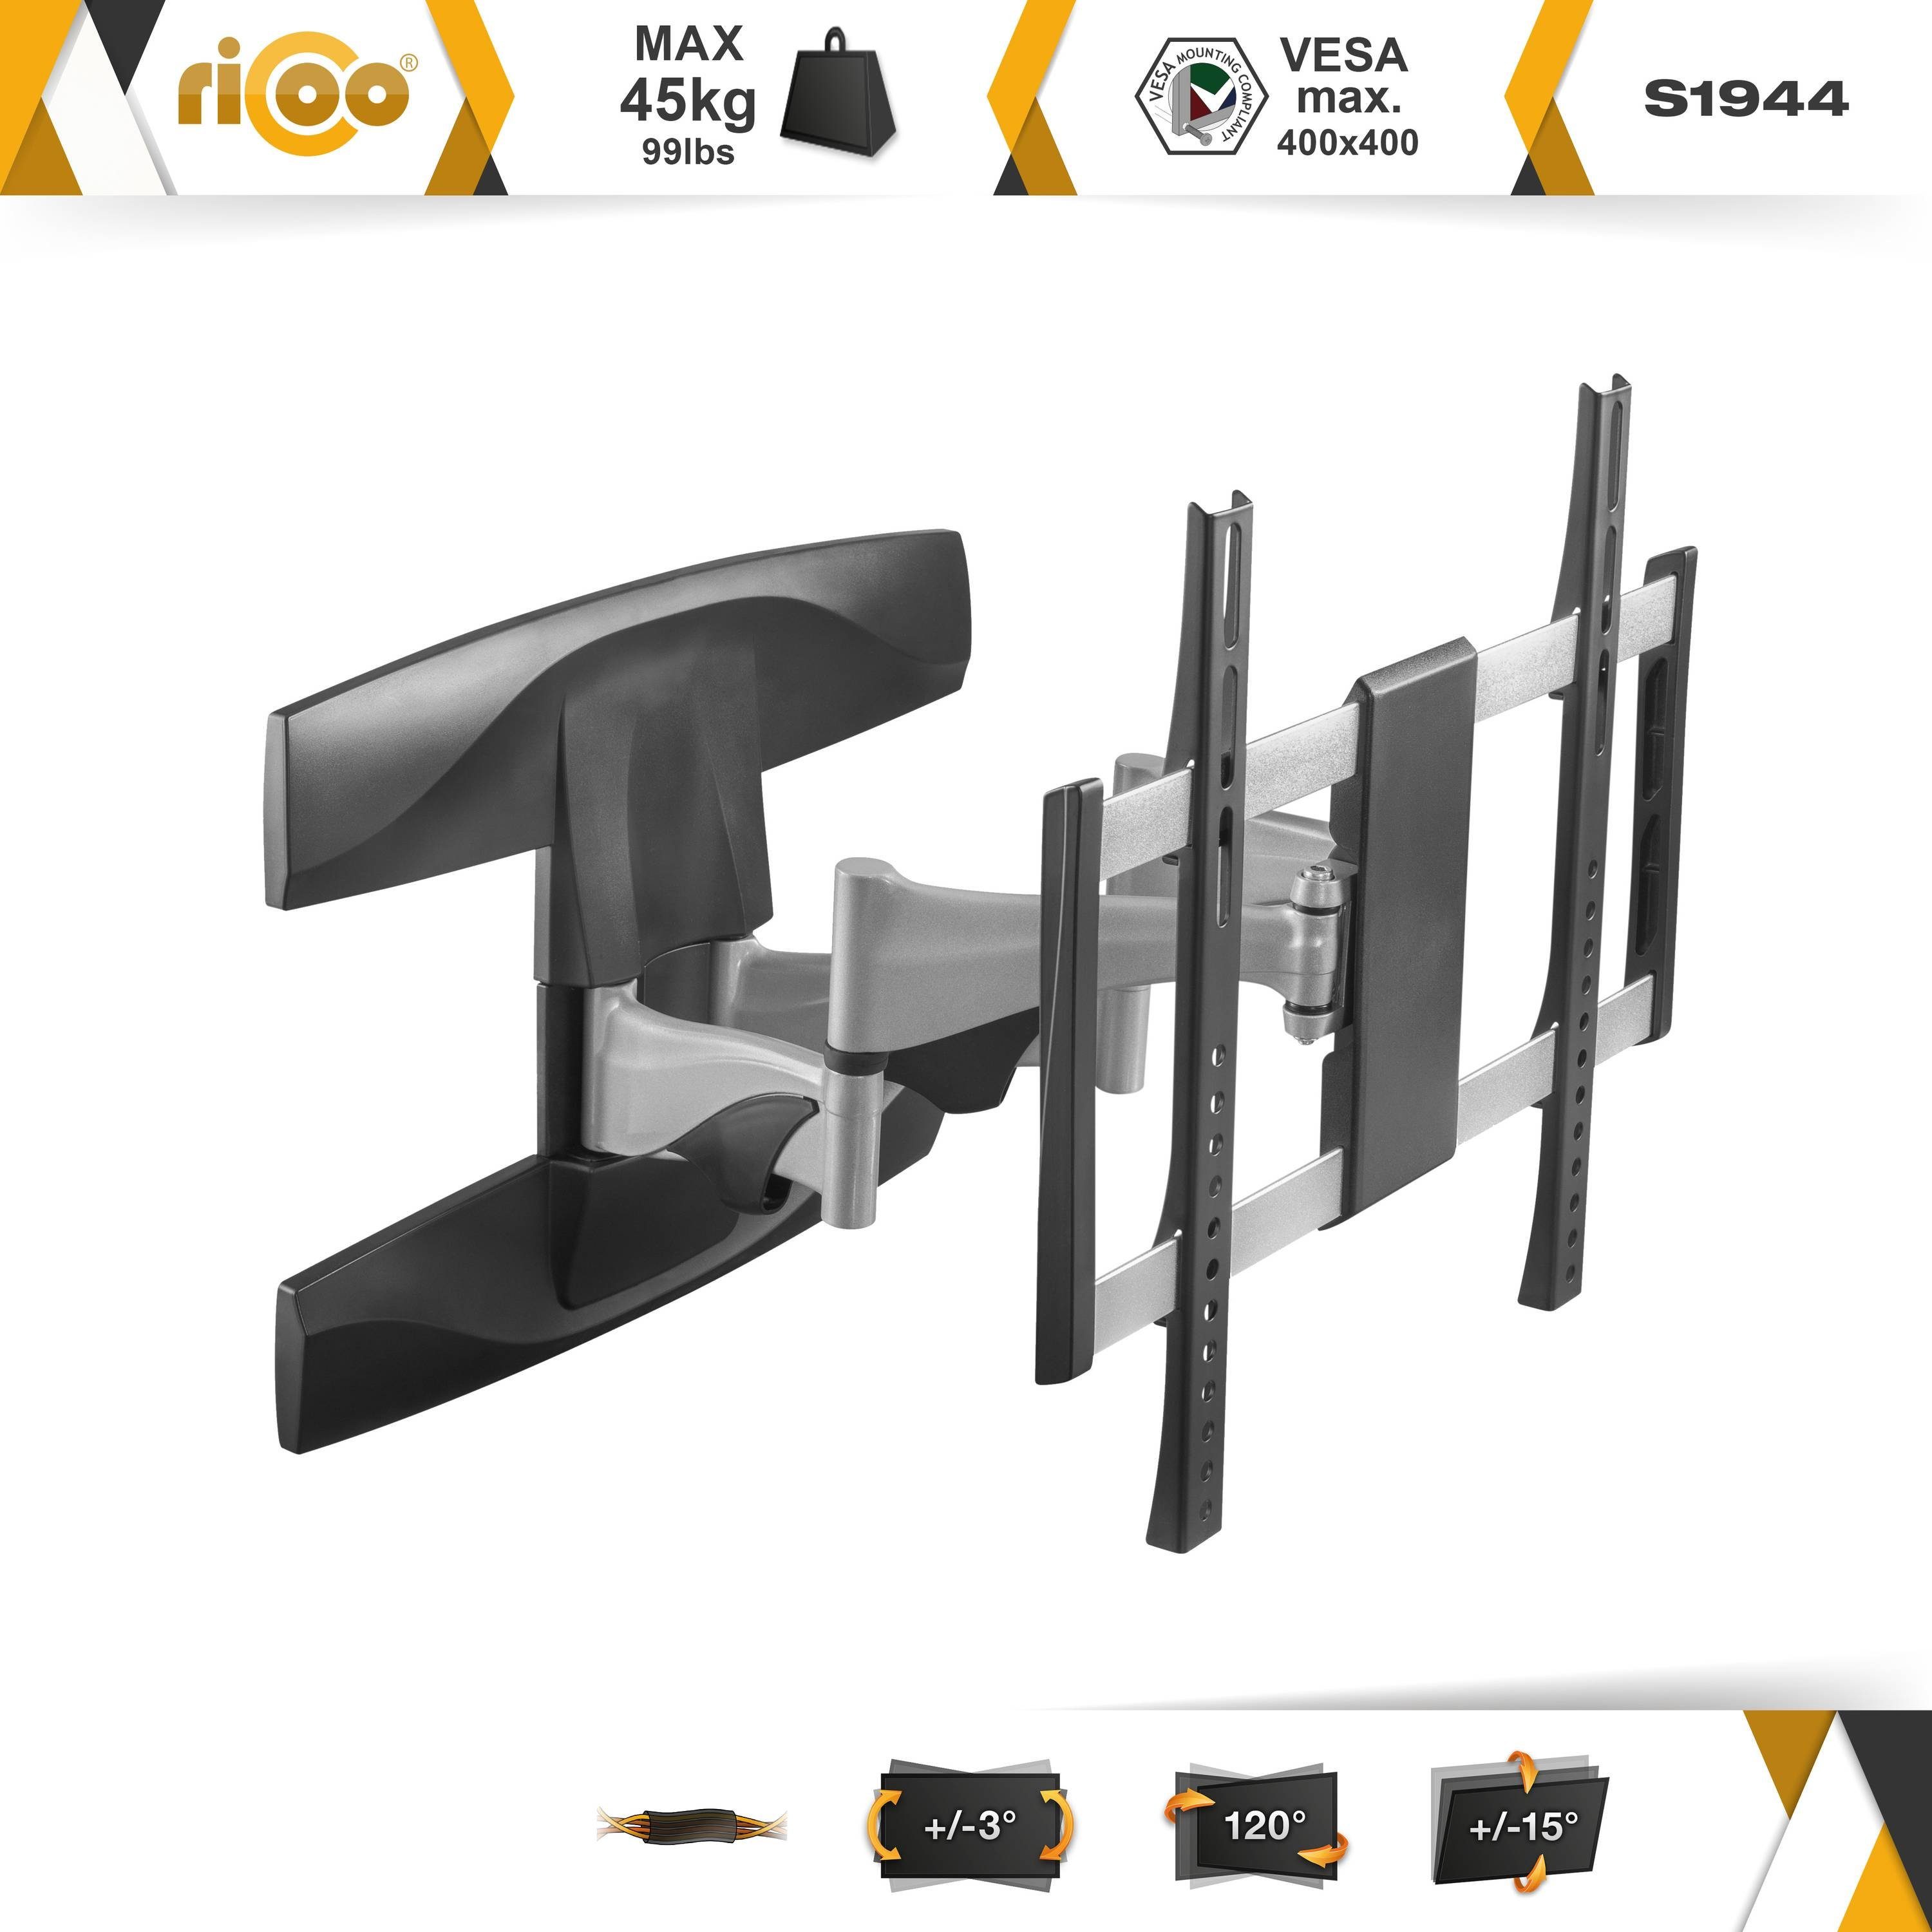 RICOO S1944 TV-Wandhalterung, (bis 400x400) 65 Halter ausziehbar schwenkbar universal Zoll, Fernseher VESA neigbar